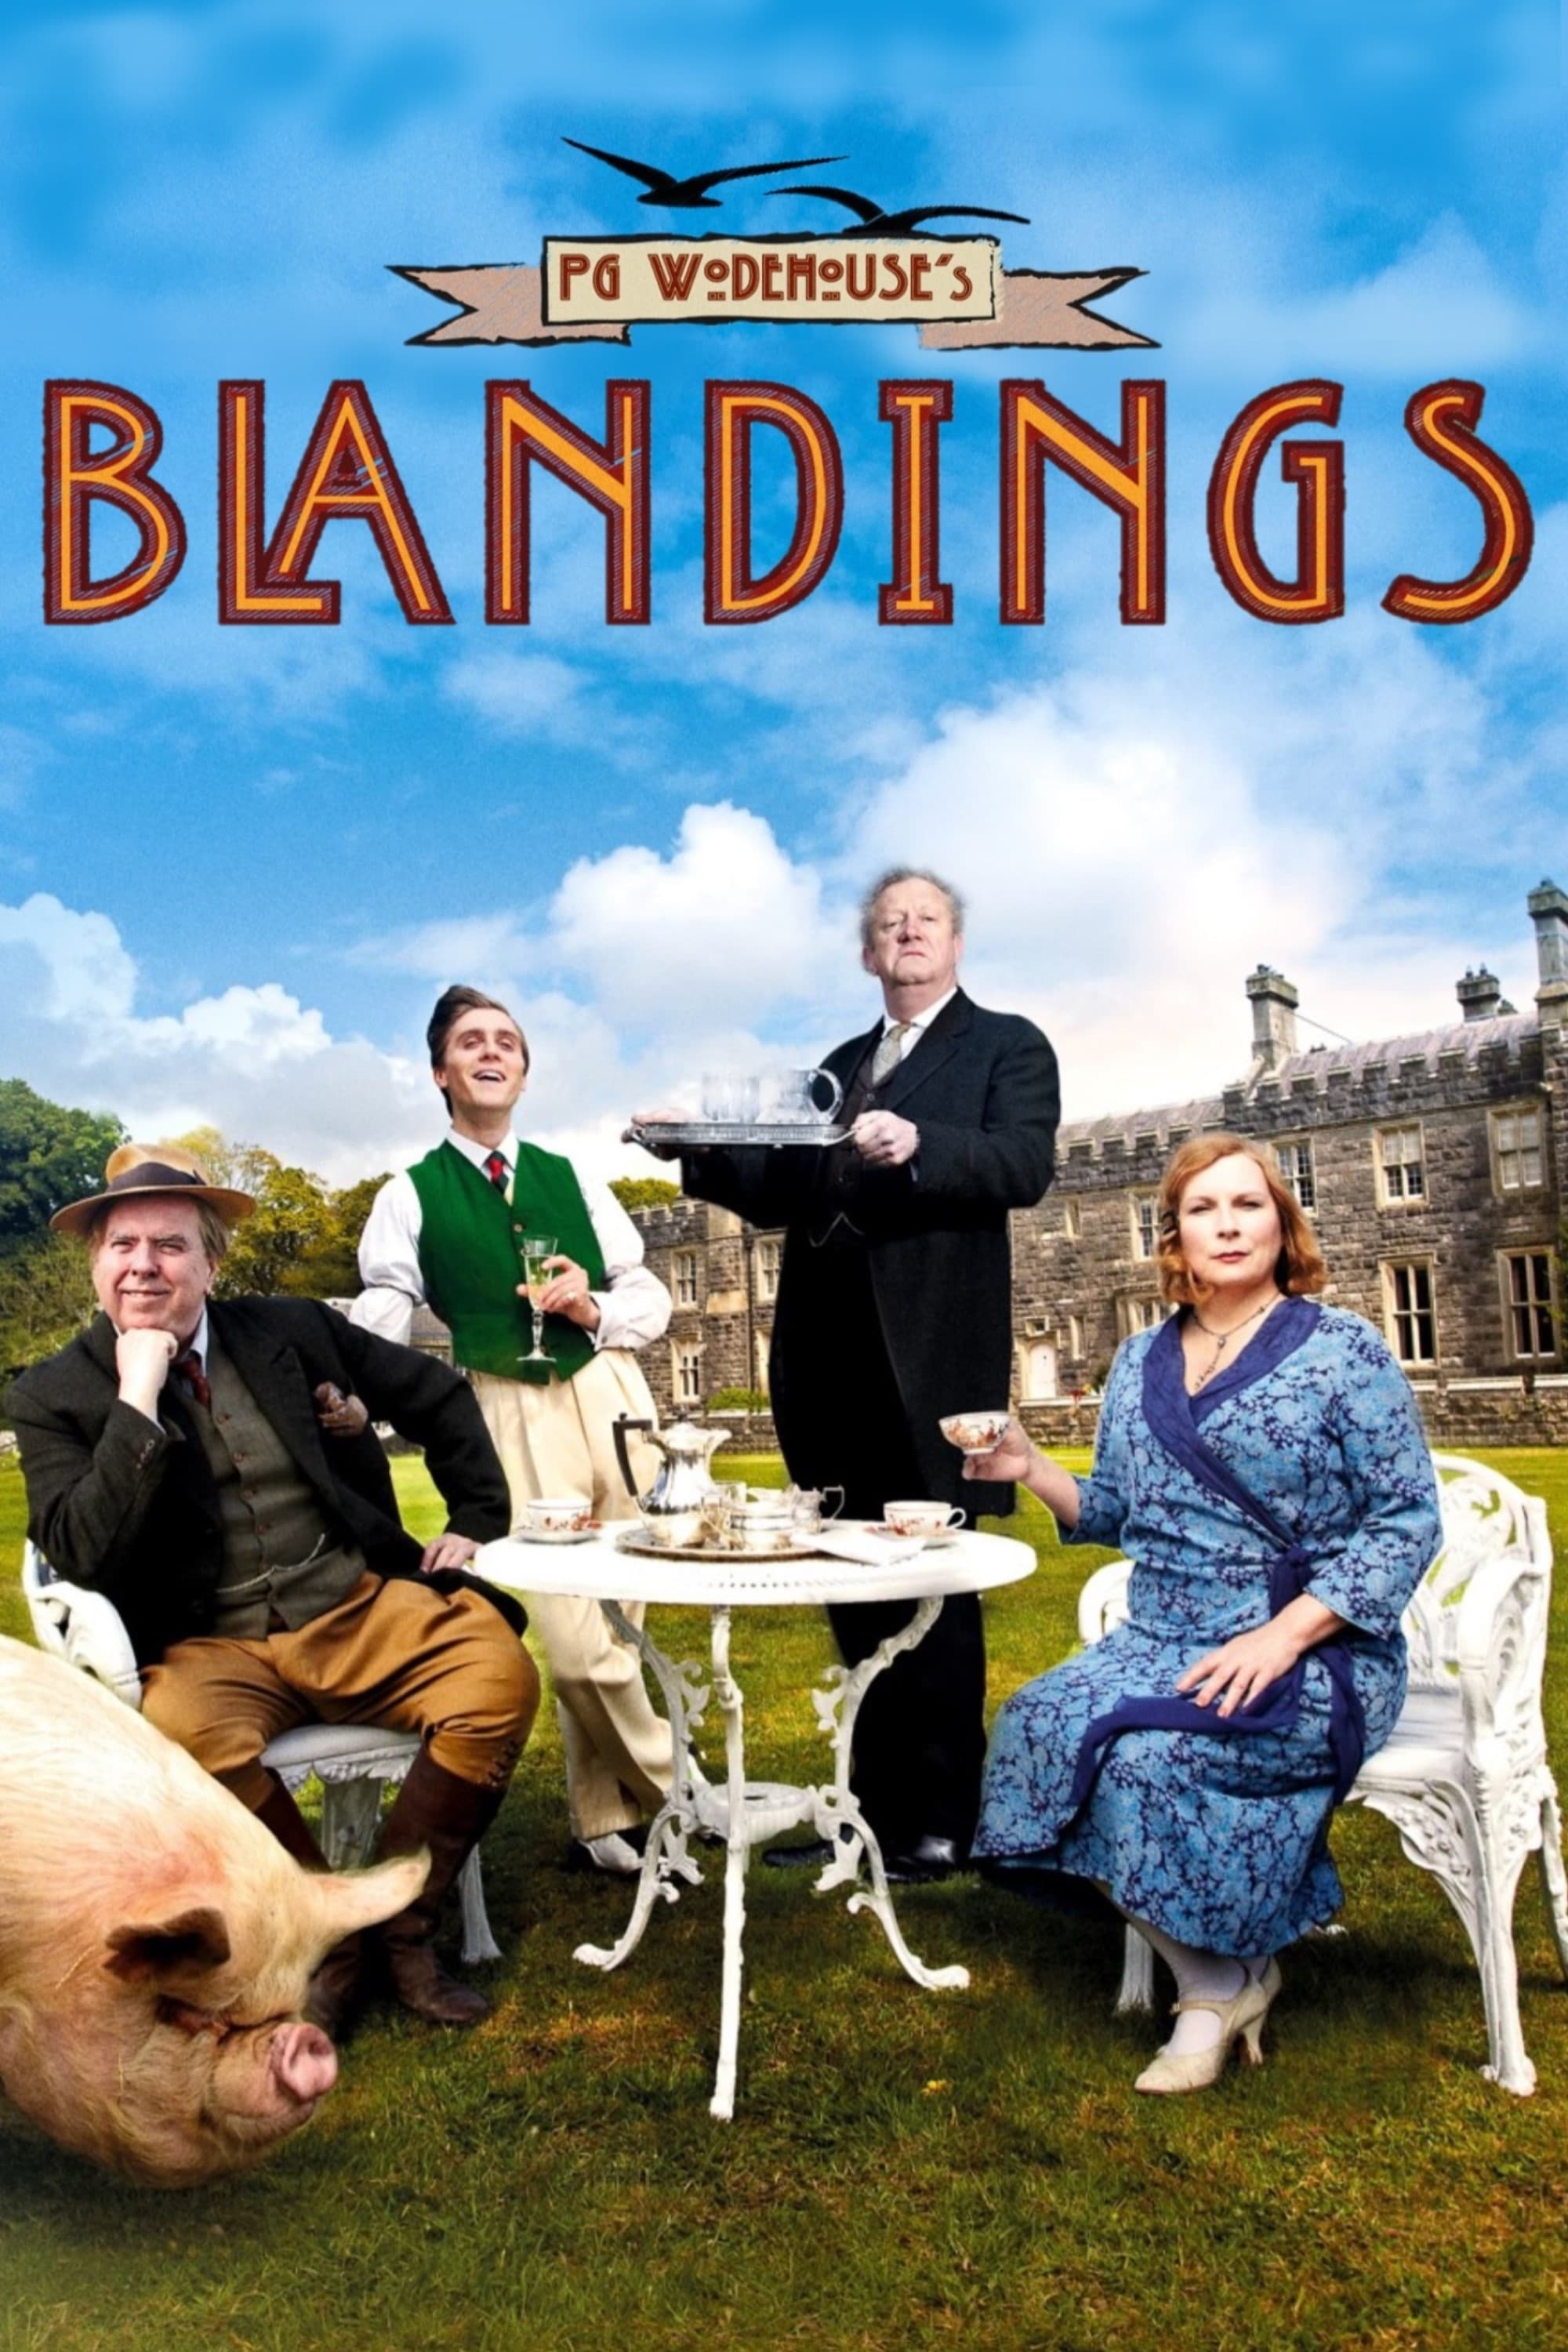 Blandings (2013)